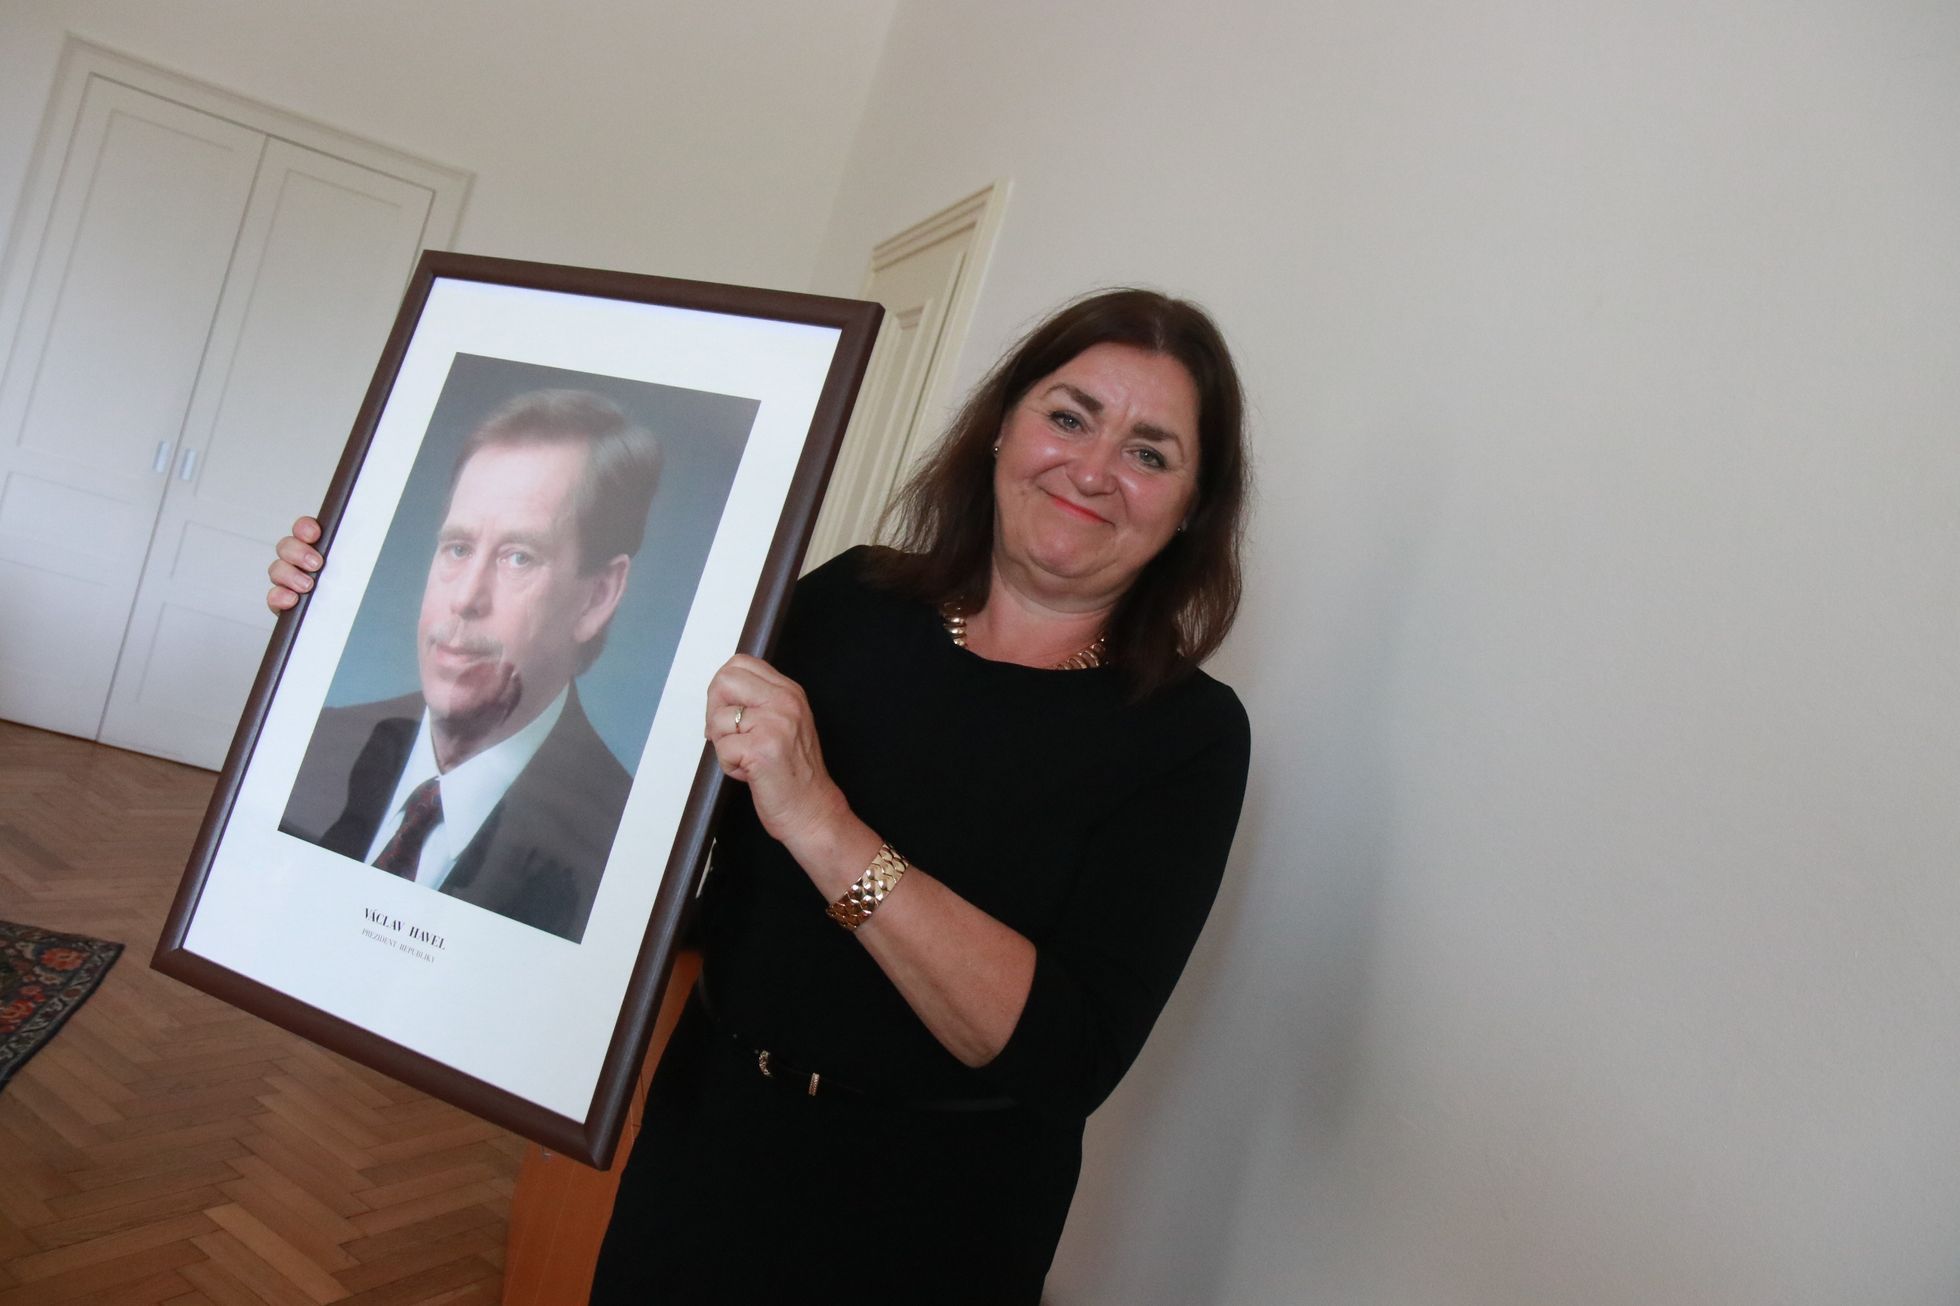 Když přišla Helena Langšádlová do úřadu ministryně pro vědu a výzkum, nechala si do kanceláře pověsit portrét bývalého prezidenta Václava Havla, který jí byl politicky i lidsky velmi blízký.